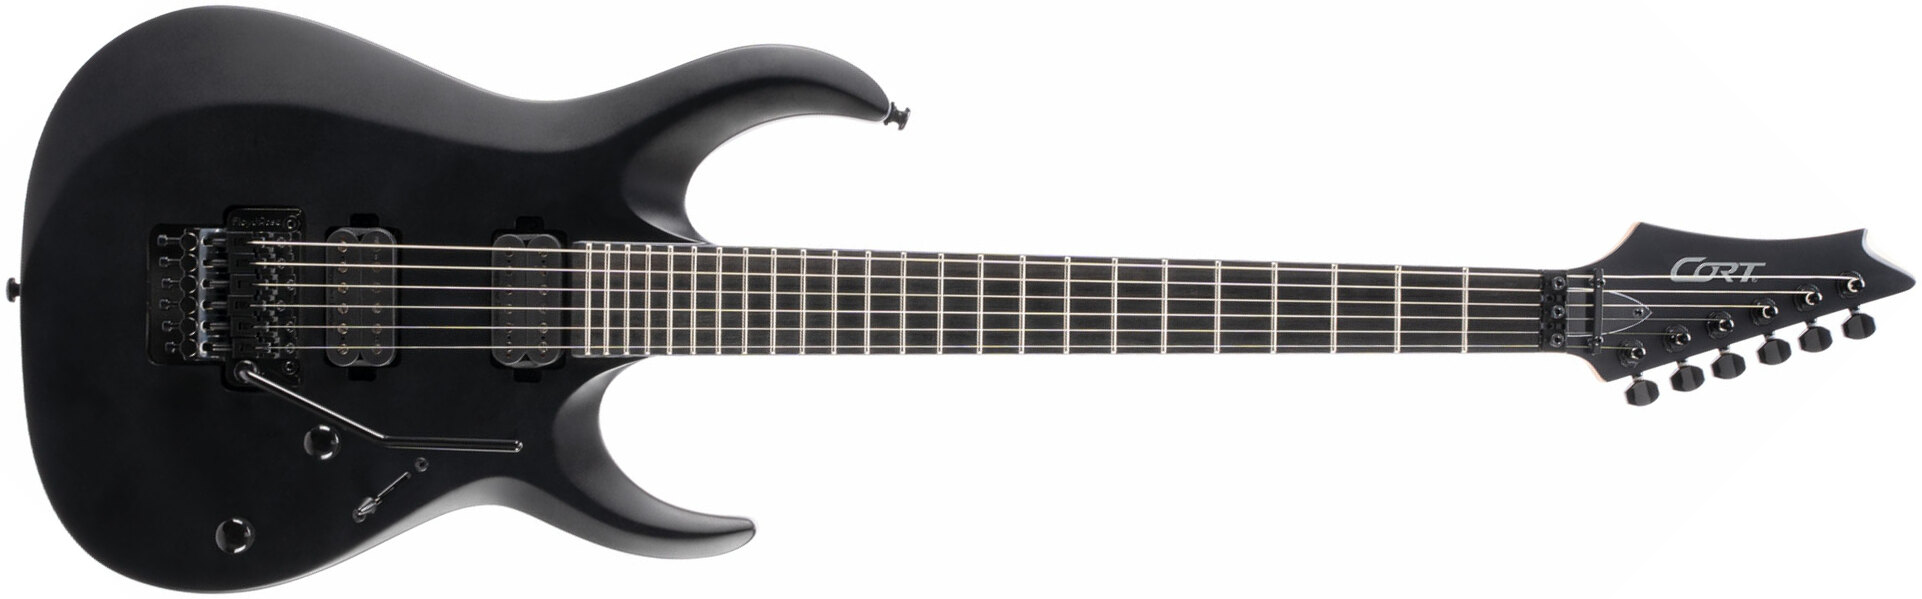 Cort X500 Menace Hh Seymour Duncan Fr Eb - Black Satin - Guitarra eléctrica con forma de str. - Main picture